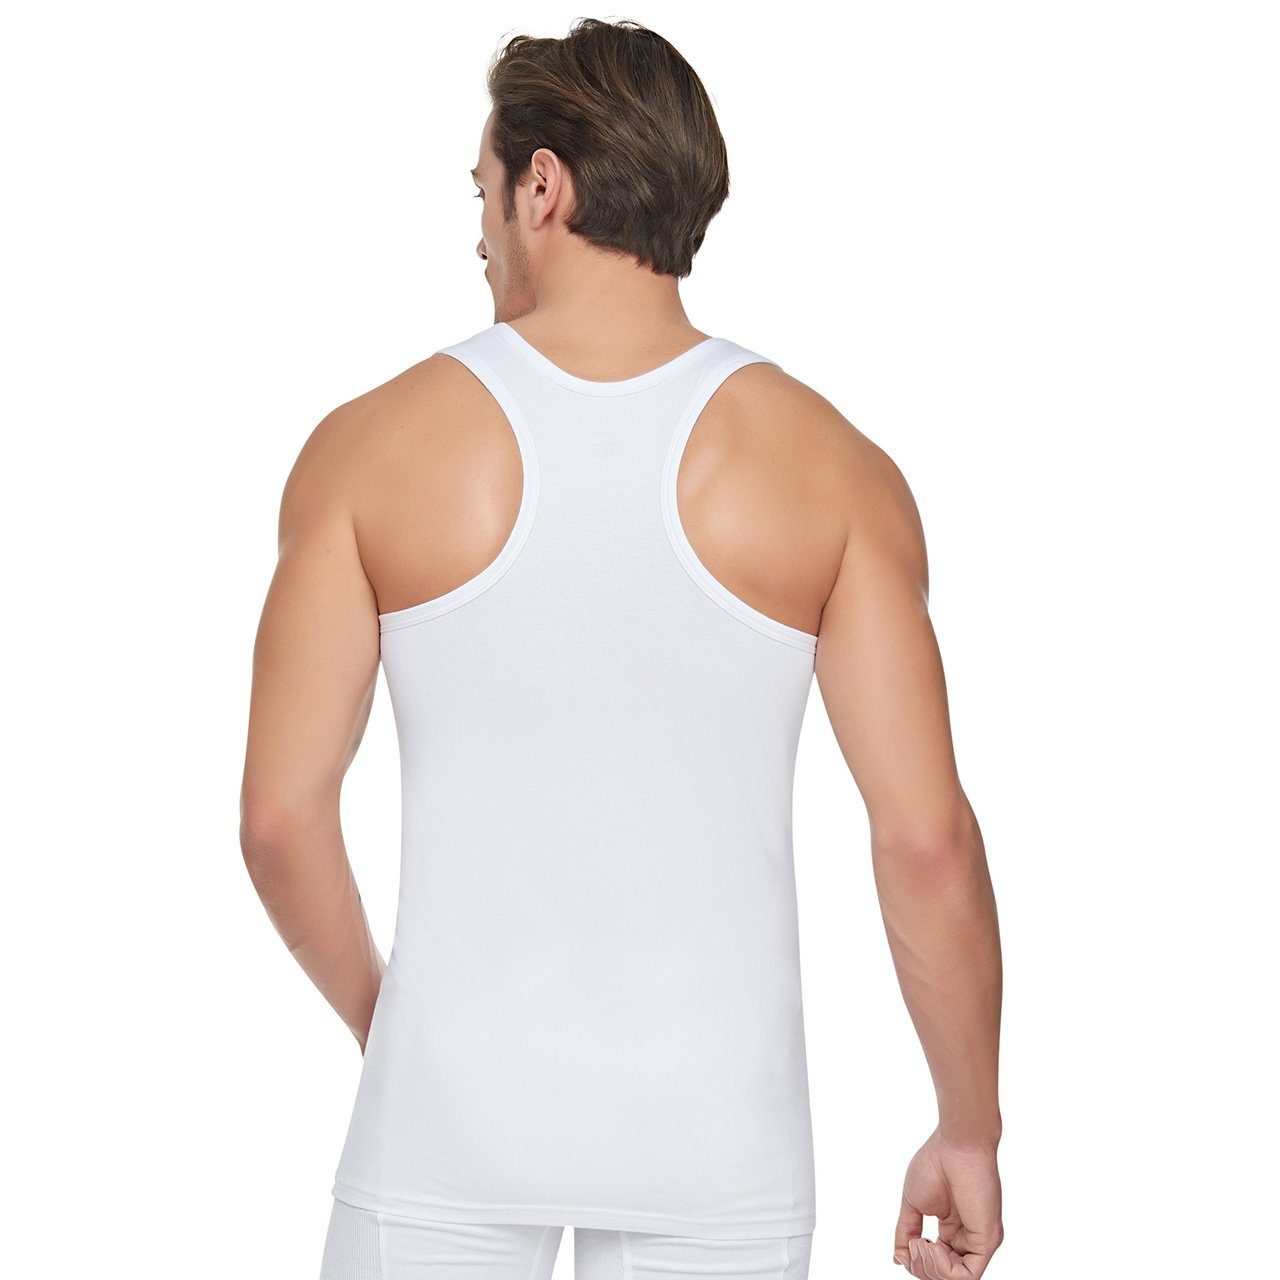 Selef Creation Unterhemd 4er Pack Rambo Herren Unterhemd Feinripp Tank-Top 100% Baumwolle schnelltrocknendes, geruchshemmende Eigenschaften Weiß